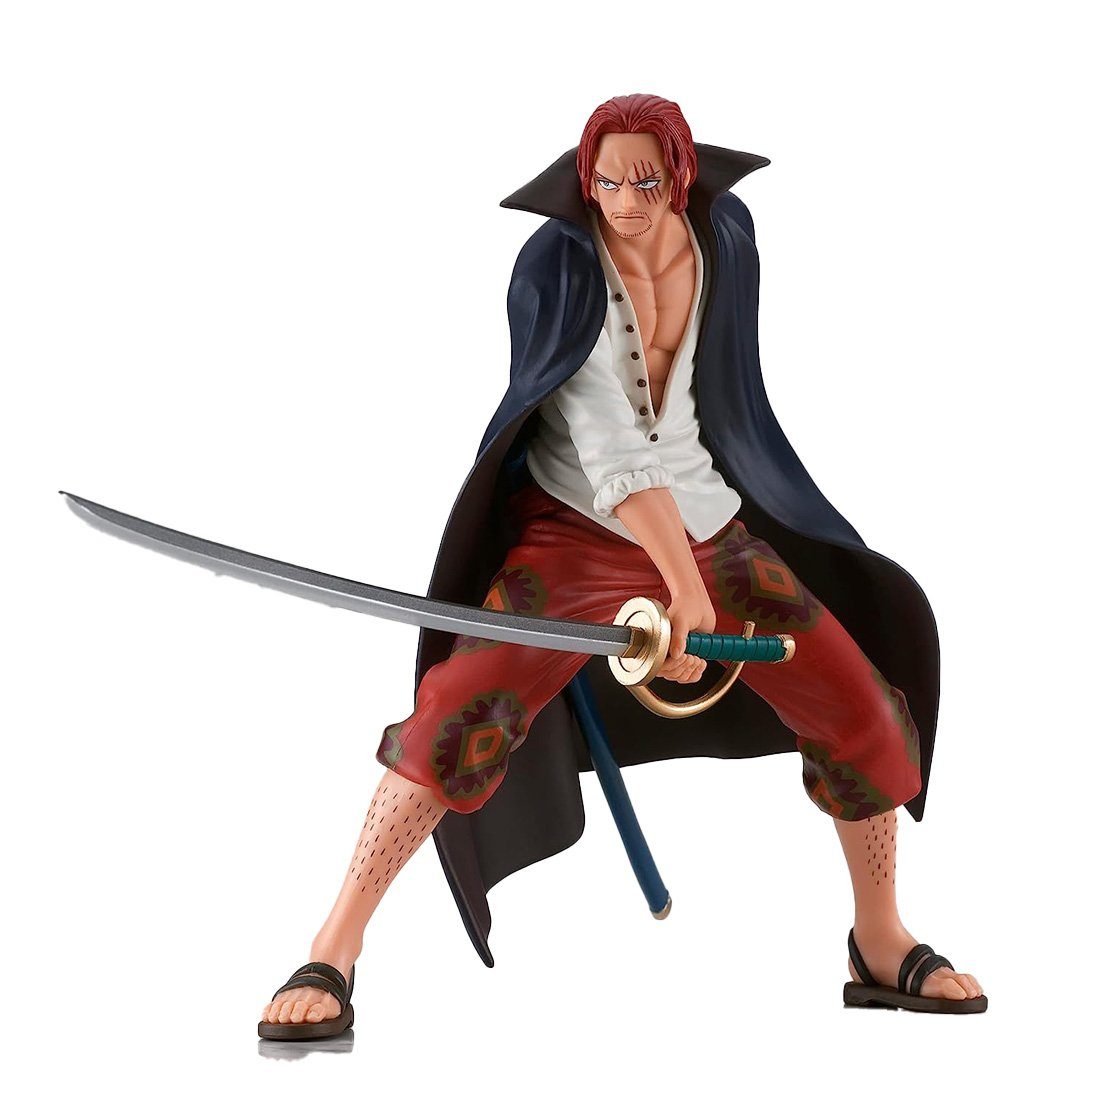 Bandai Merchandise-Figur BANDAI DXF POSING, One Piece Figur von Shanks, der rote Shanks, (Einzelfigur), Bandai DXF Posing Figur von Shanks mit Schwert